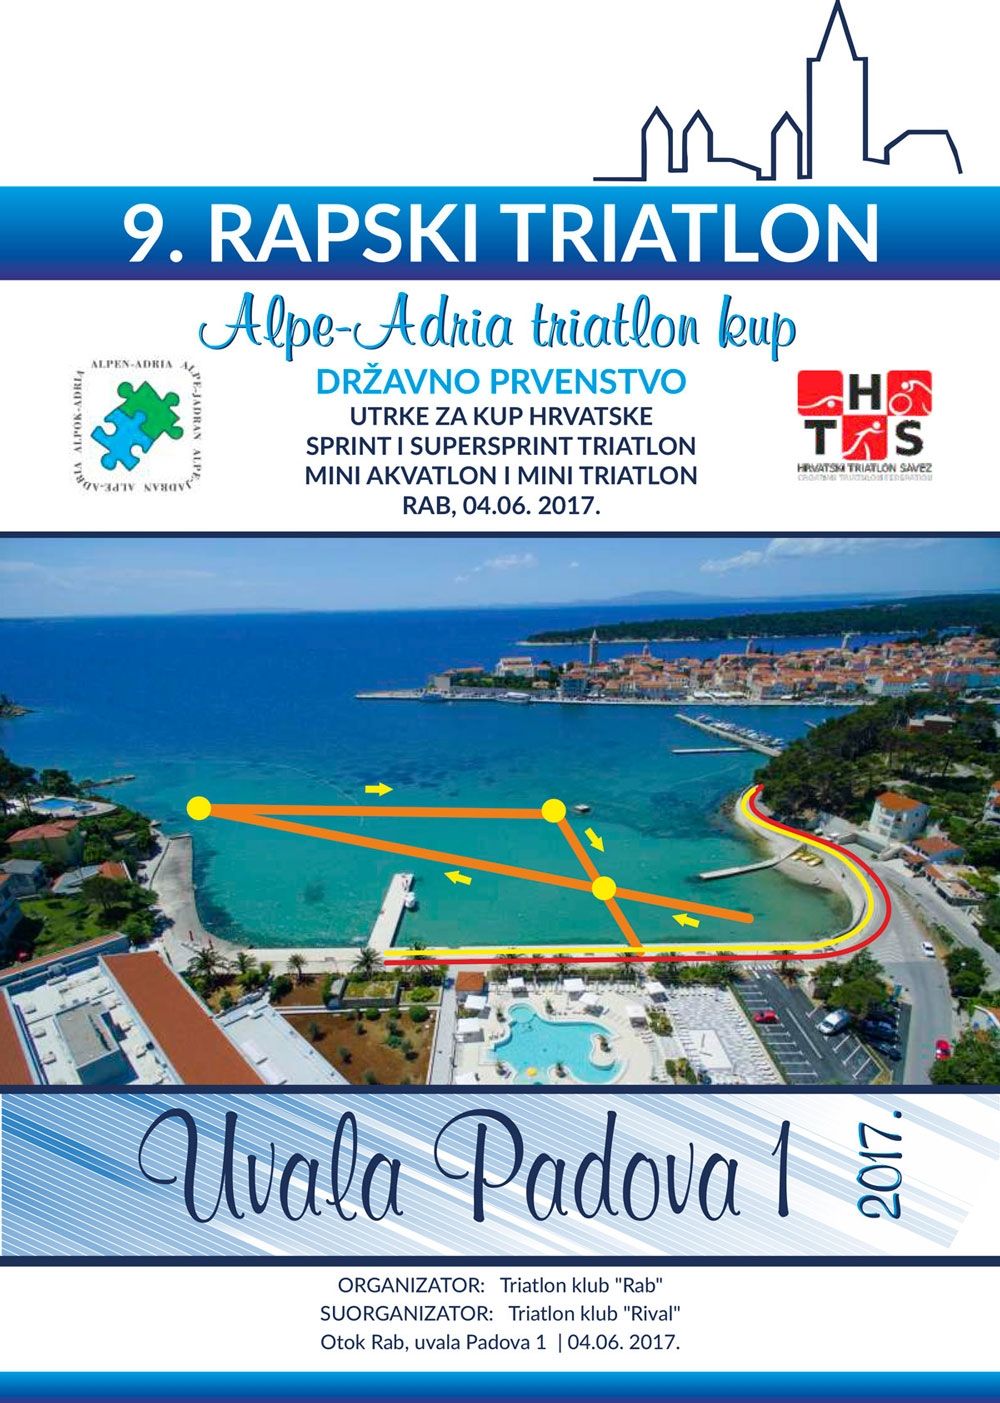 Krenule pripreme i prijave za 9. RAPSKI TRIATLON / Otok Rab, Uvala Padova 1 | 04.06.2017.